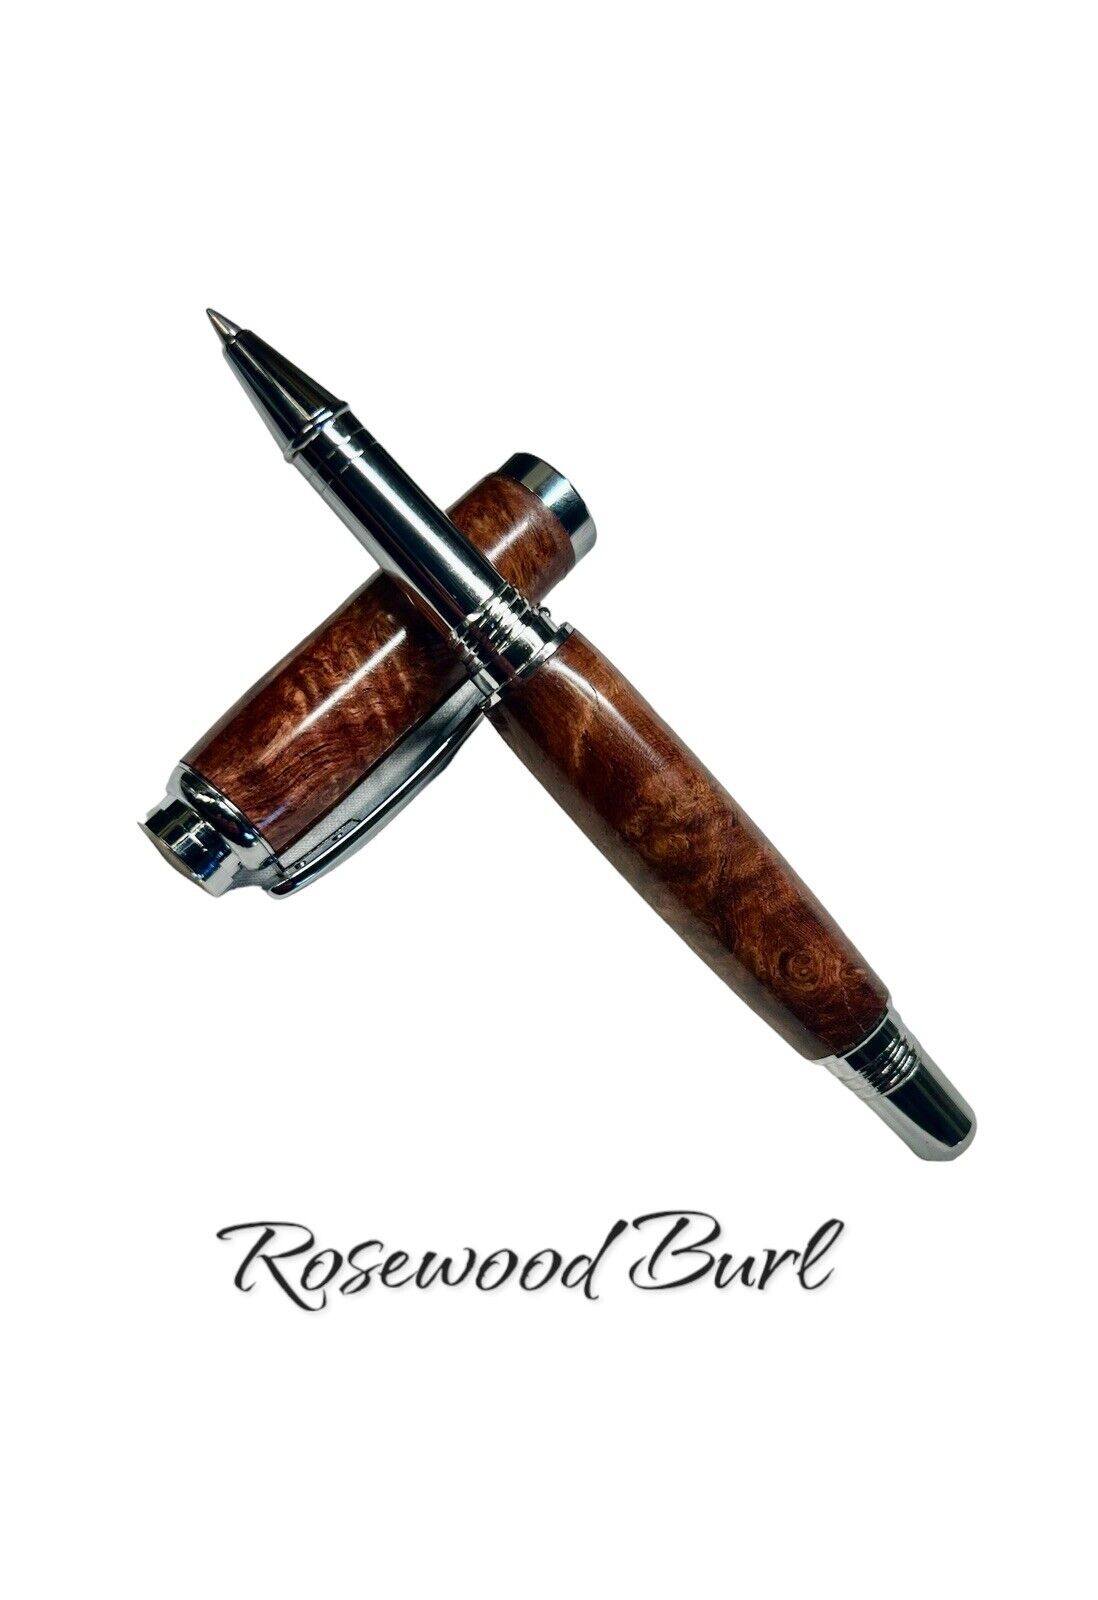 Honduran Rosewood Burl Rollerball pen